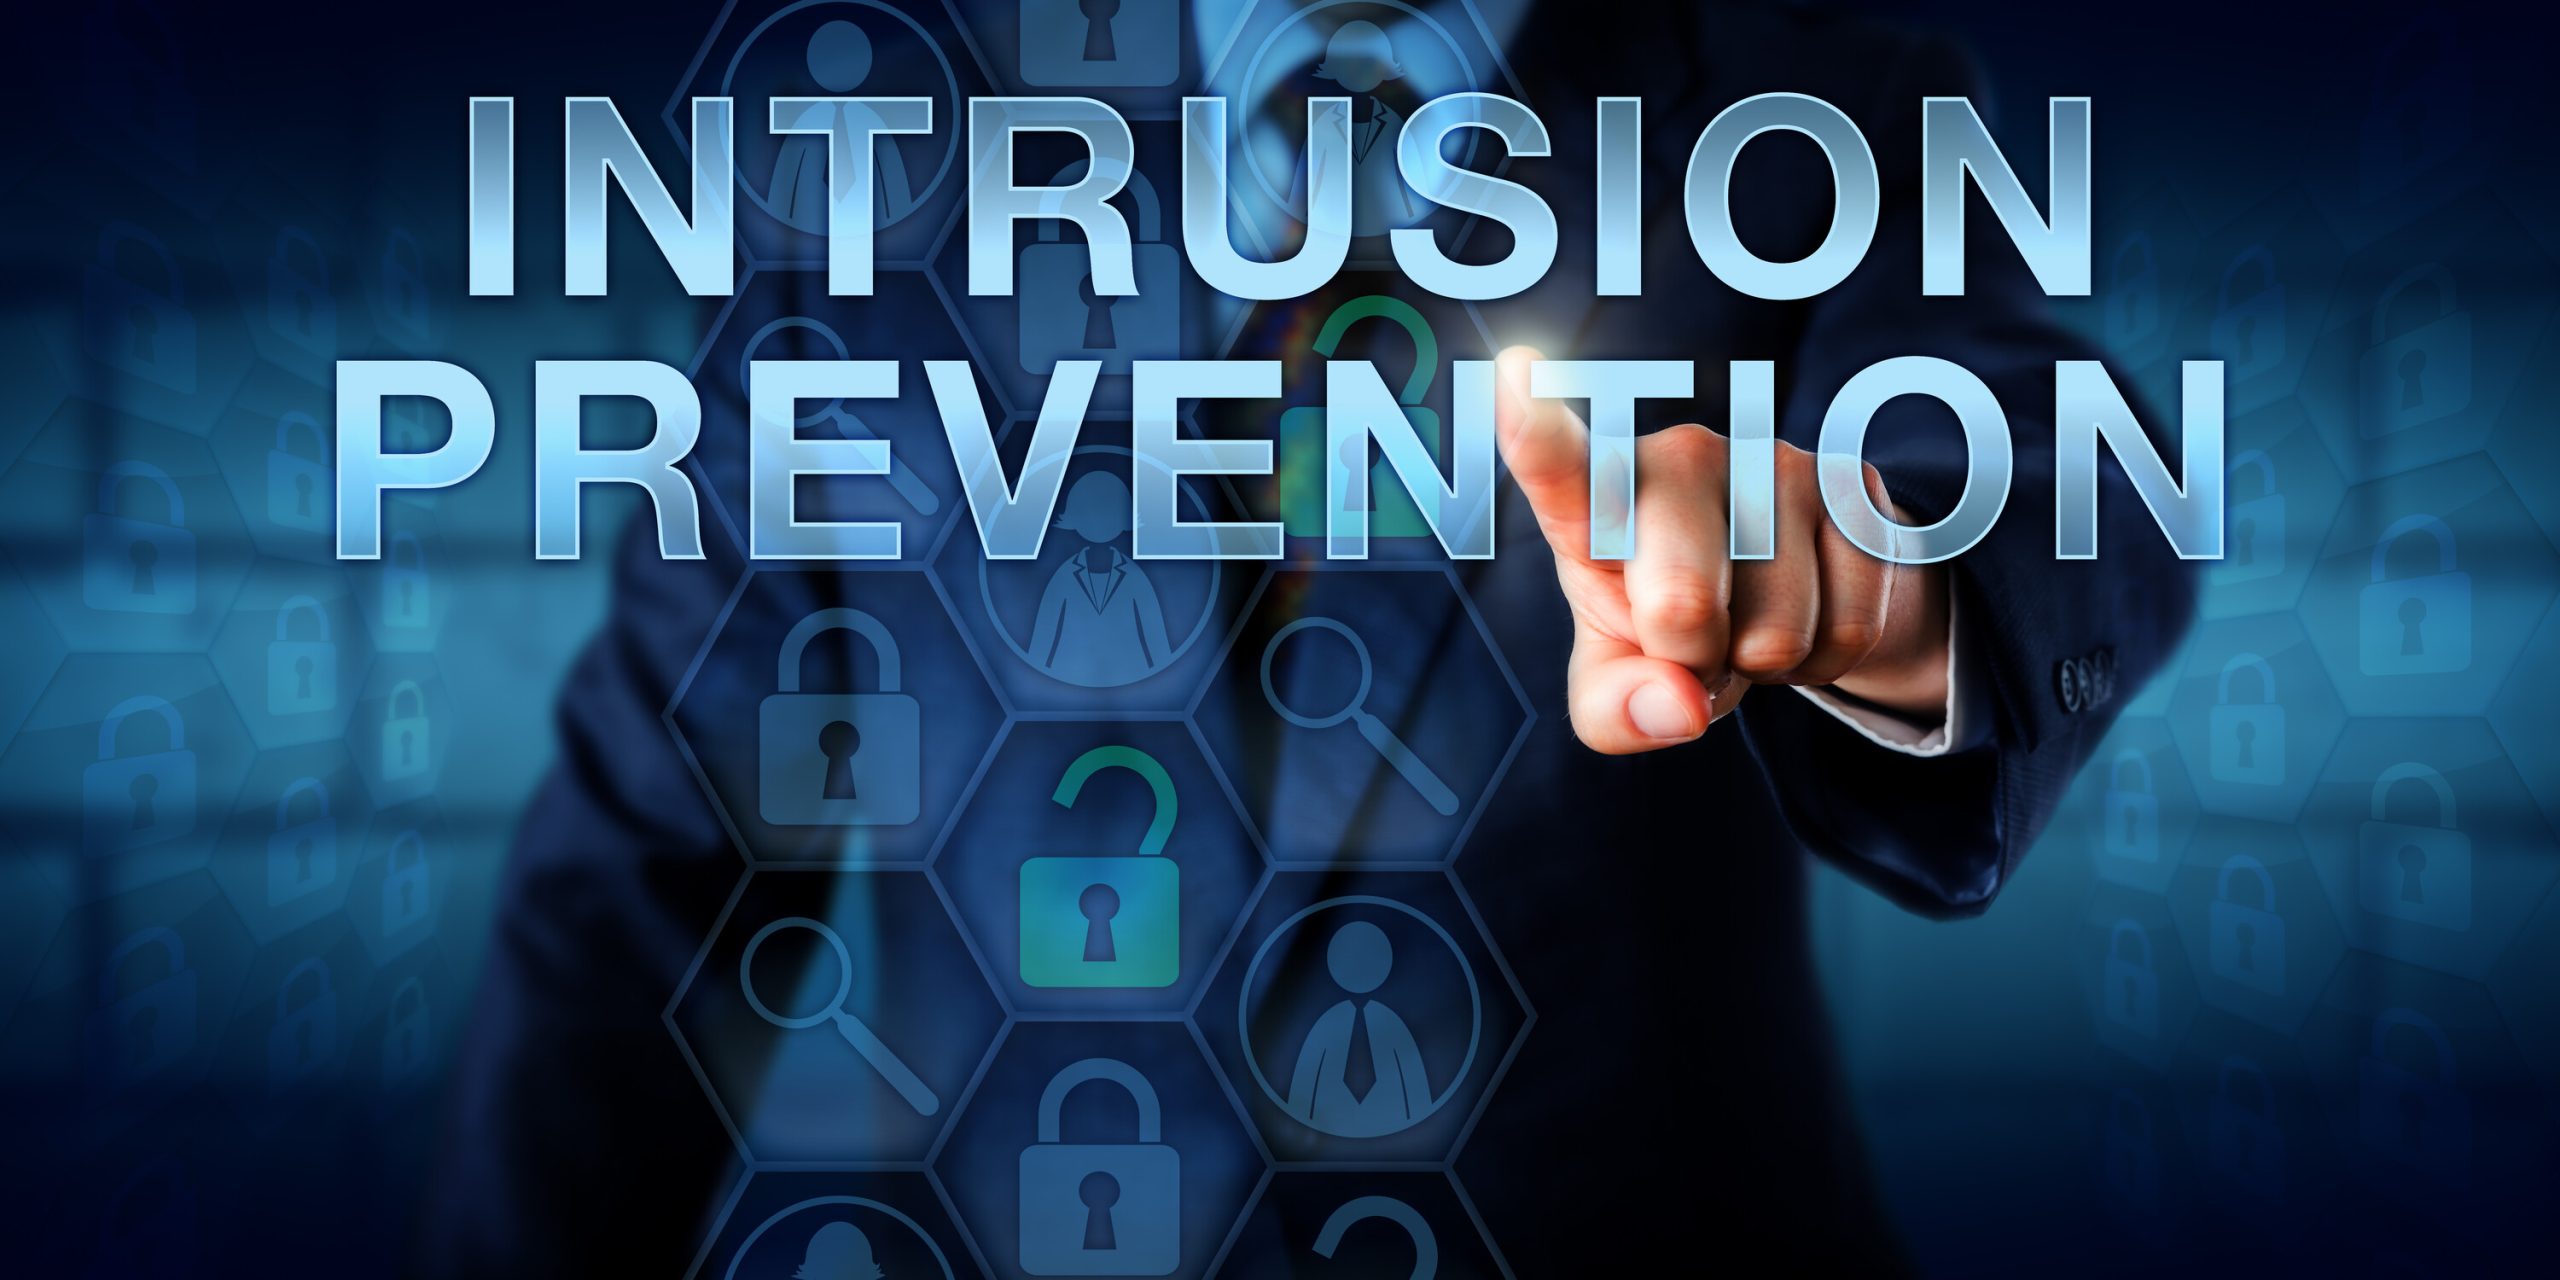 Intrusion prevention